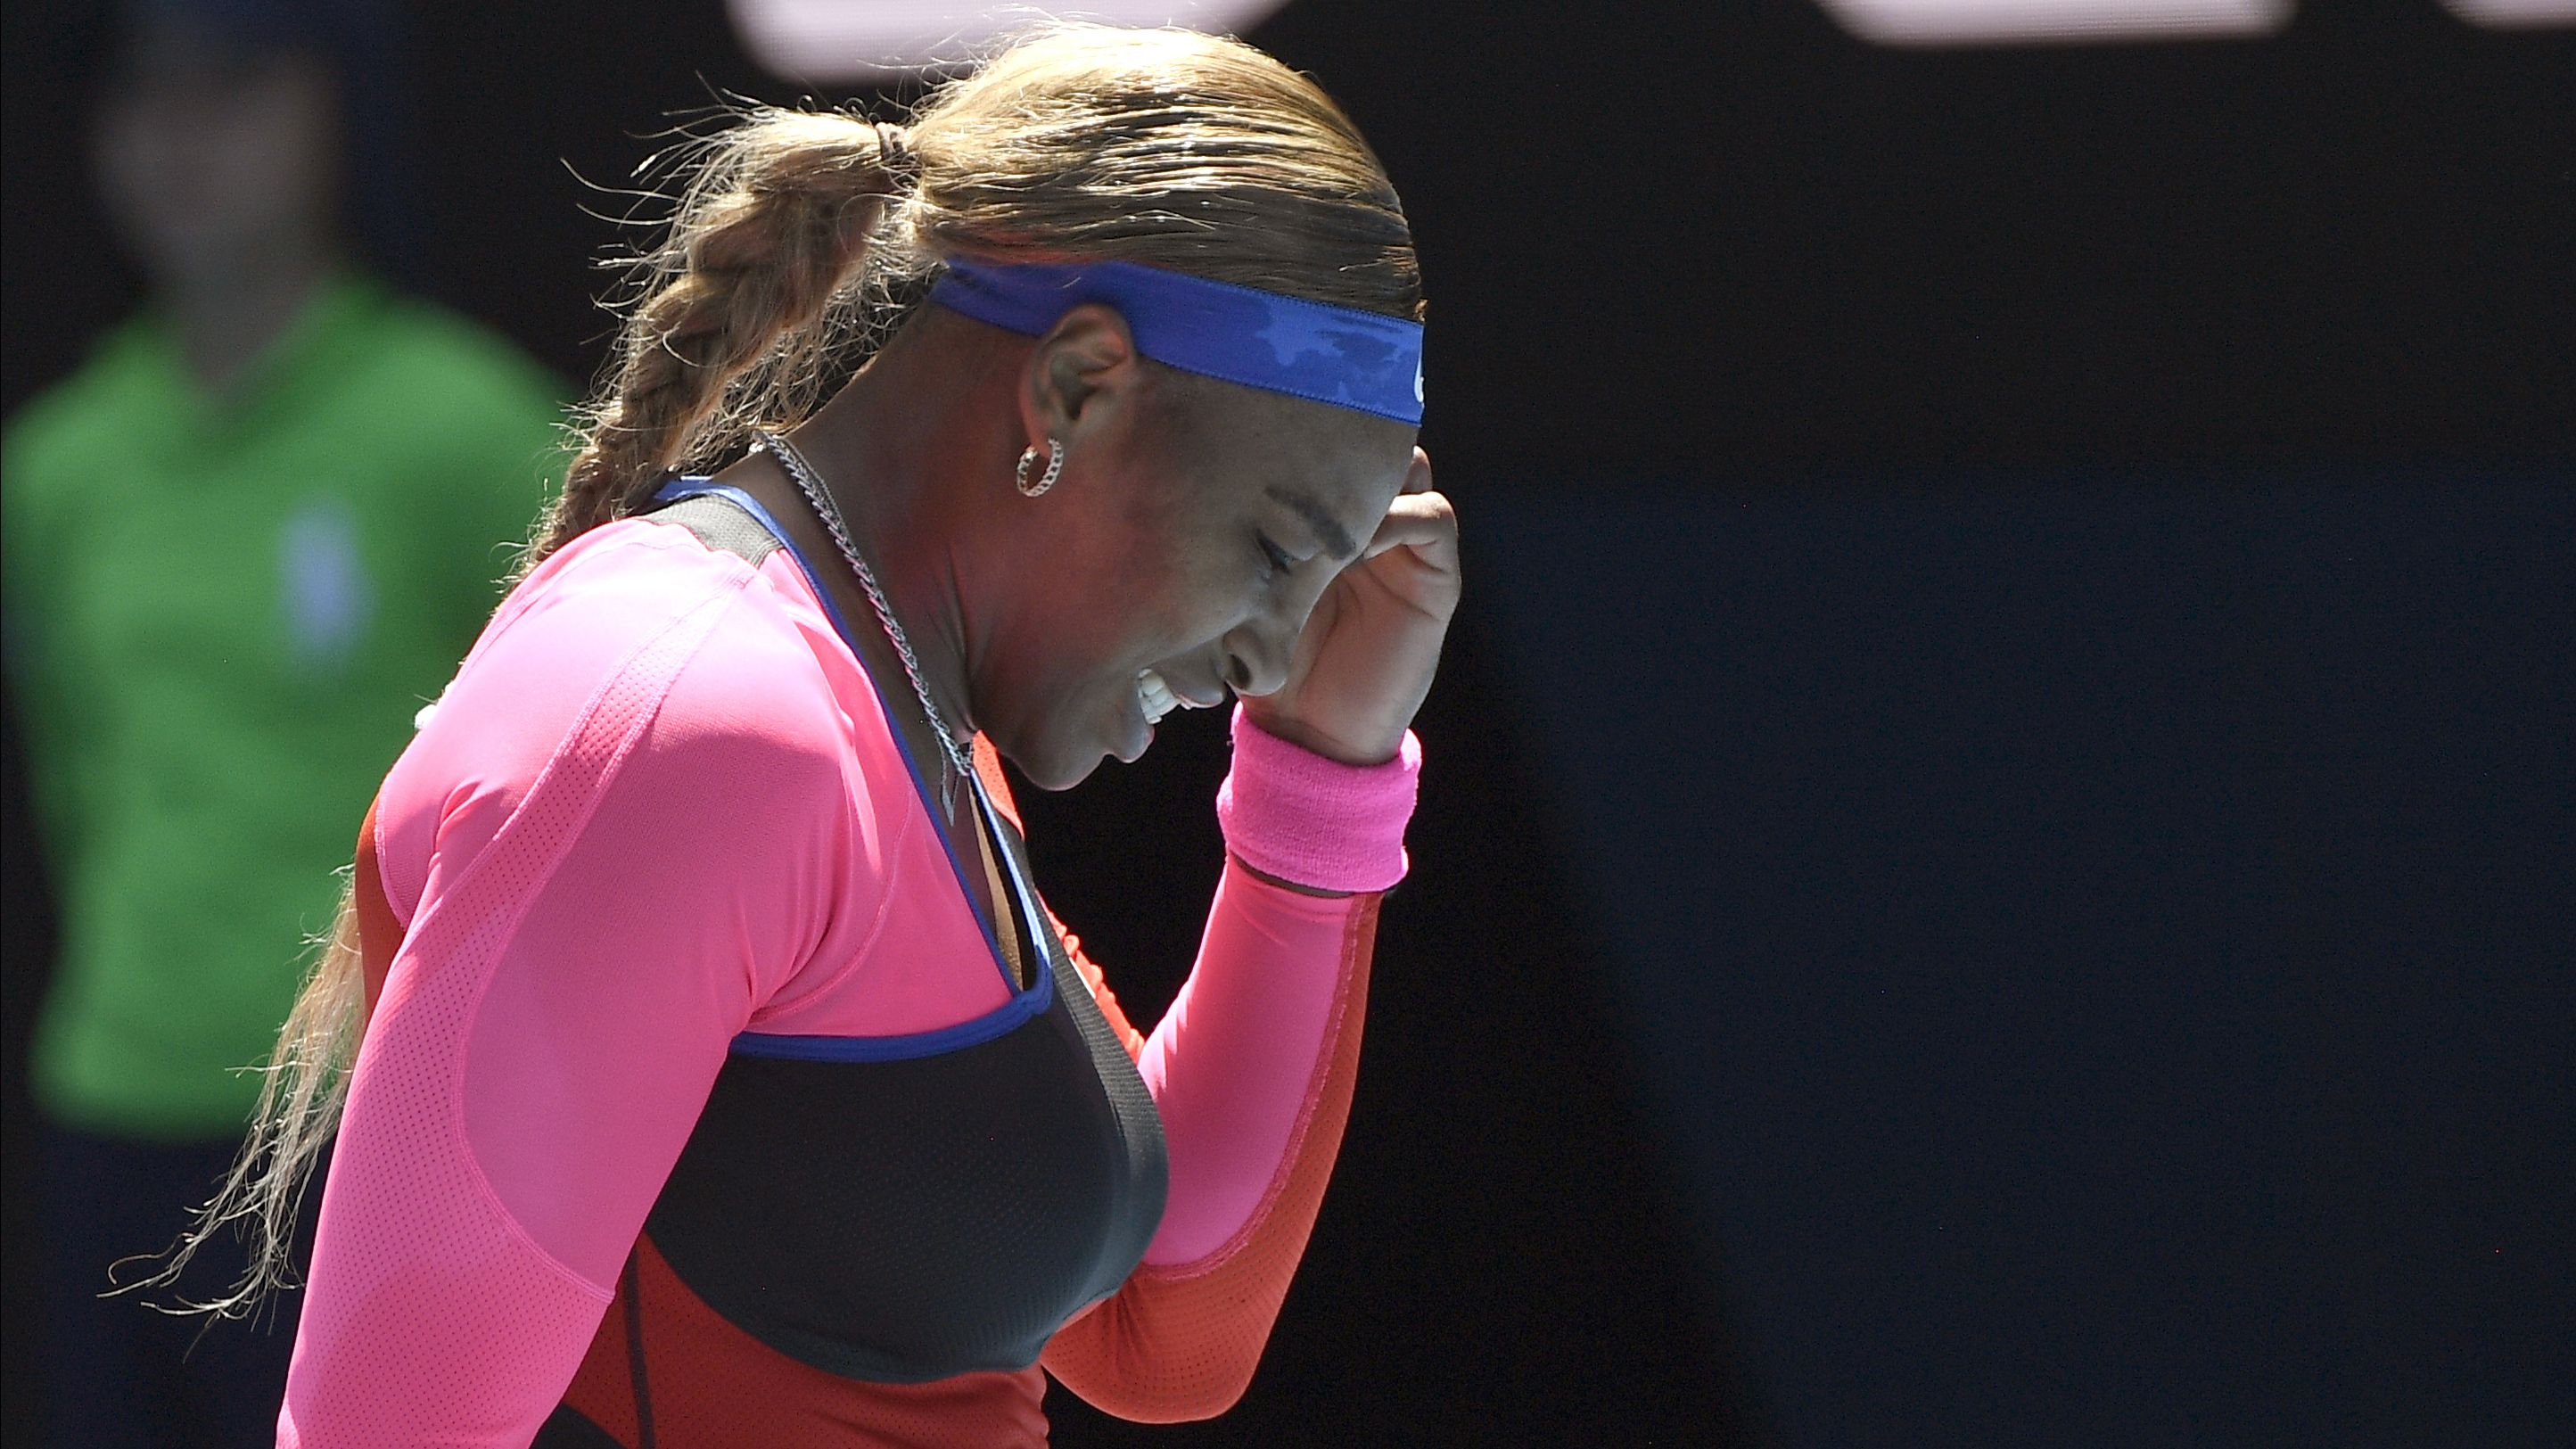 Novak Djokovic on Australian Open entry list, Serena Williams strikes blow on tournament